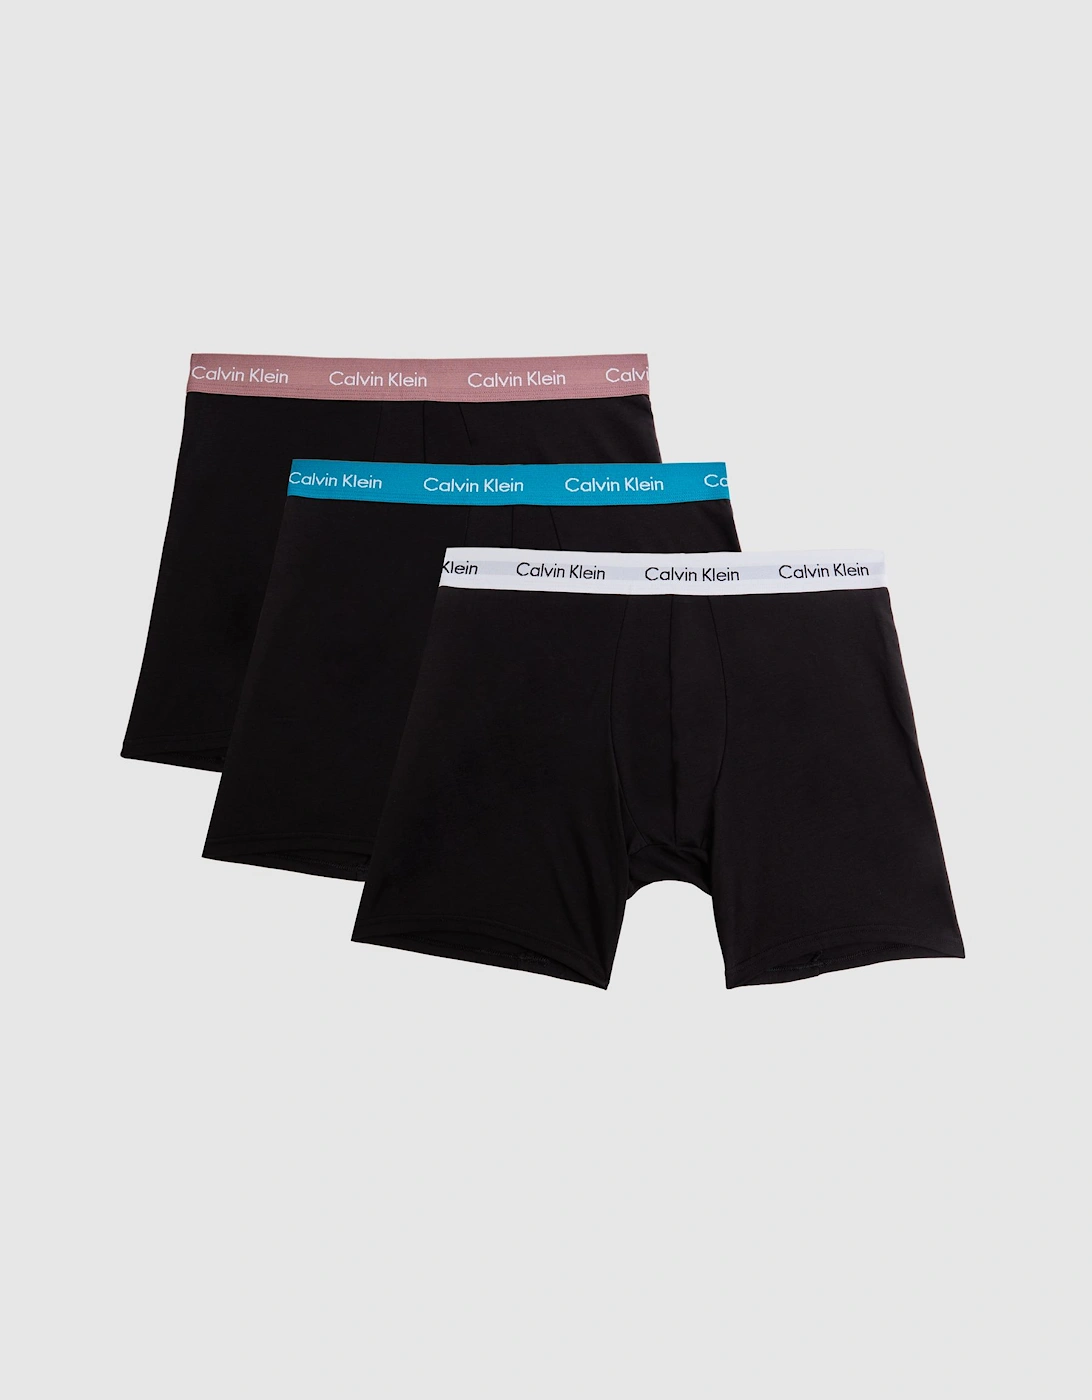 Calvin Klein Underwear Boxer Briefs 3 Pack, 2 of 1